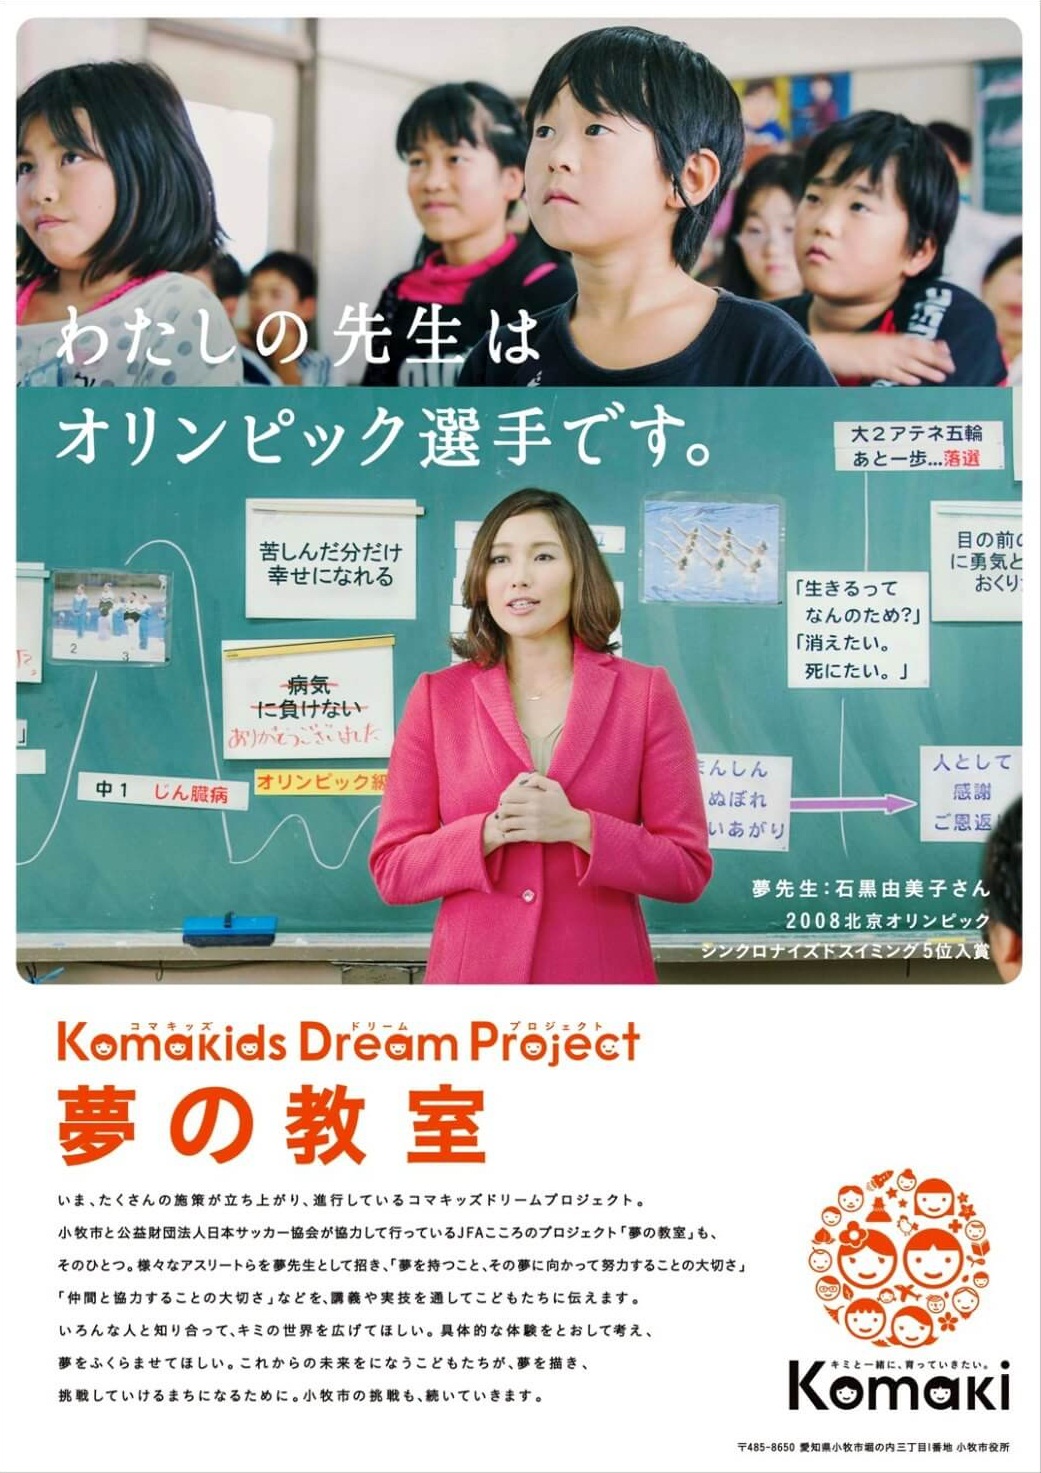 わたしたちの先生はオリンピック選手です。Komakids Dream Project 夢の教室